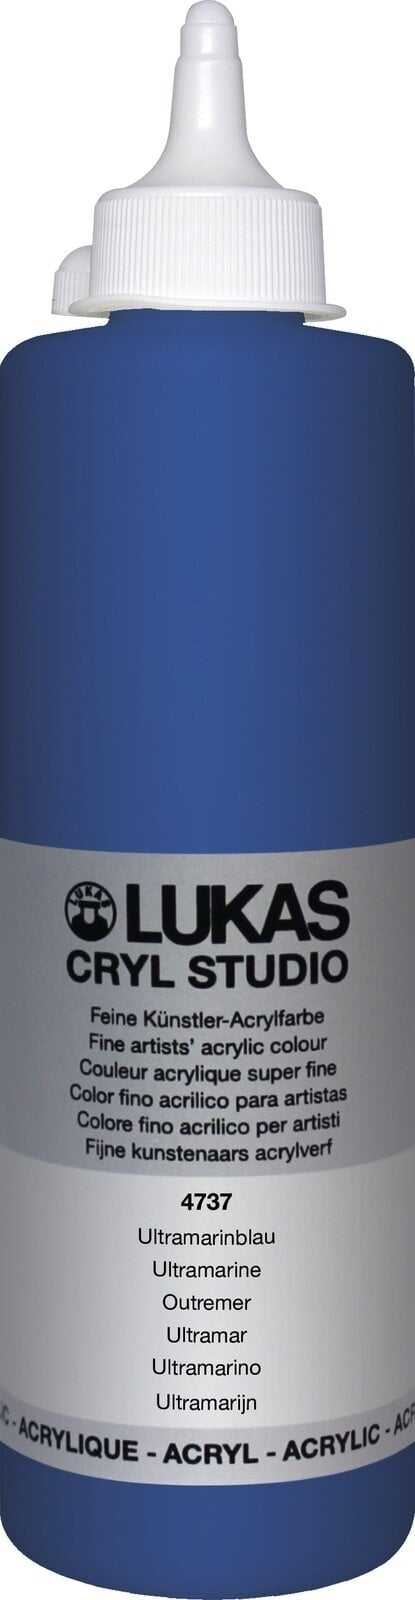 Tinta acrílica Lukas Cryl Studio Acrylic Paint Plastic Bottle Tinta acrílica Ultramarine 500 ml 1 un.